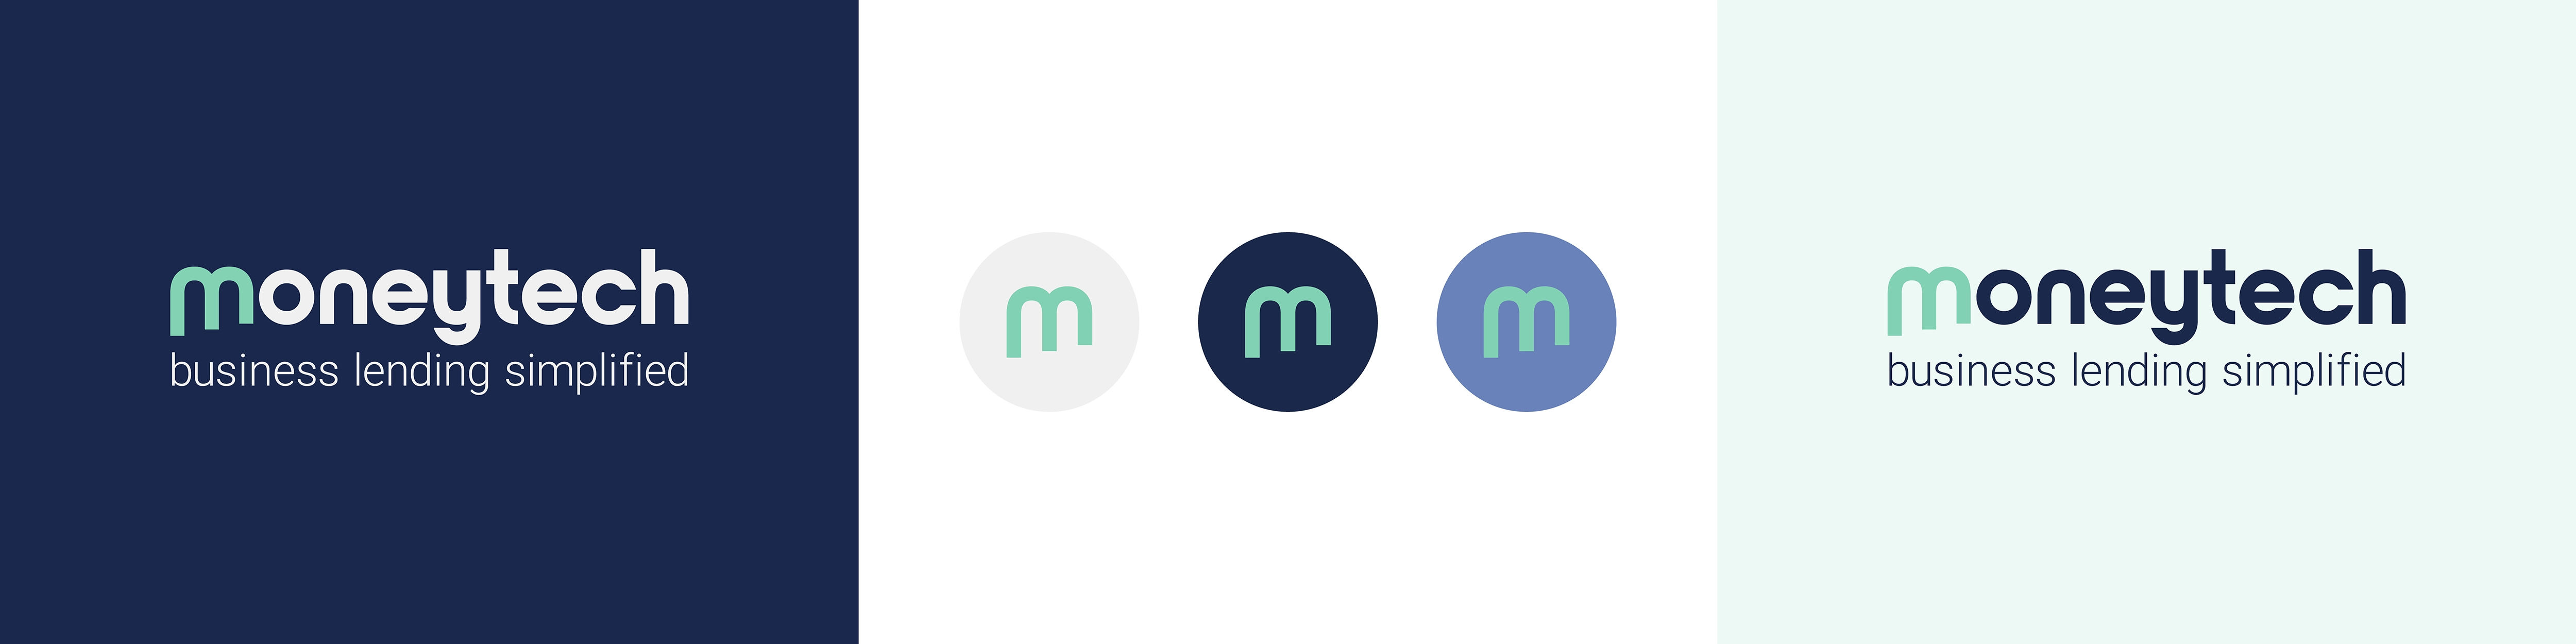 Moneytech-Logo-Variations